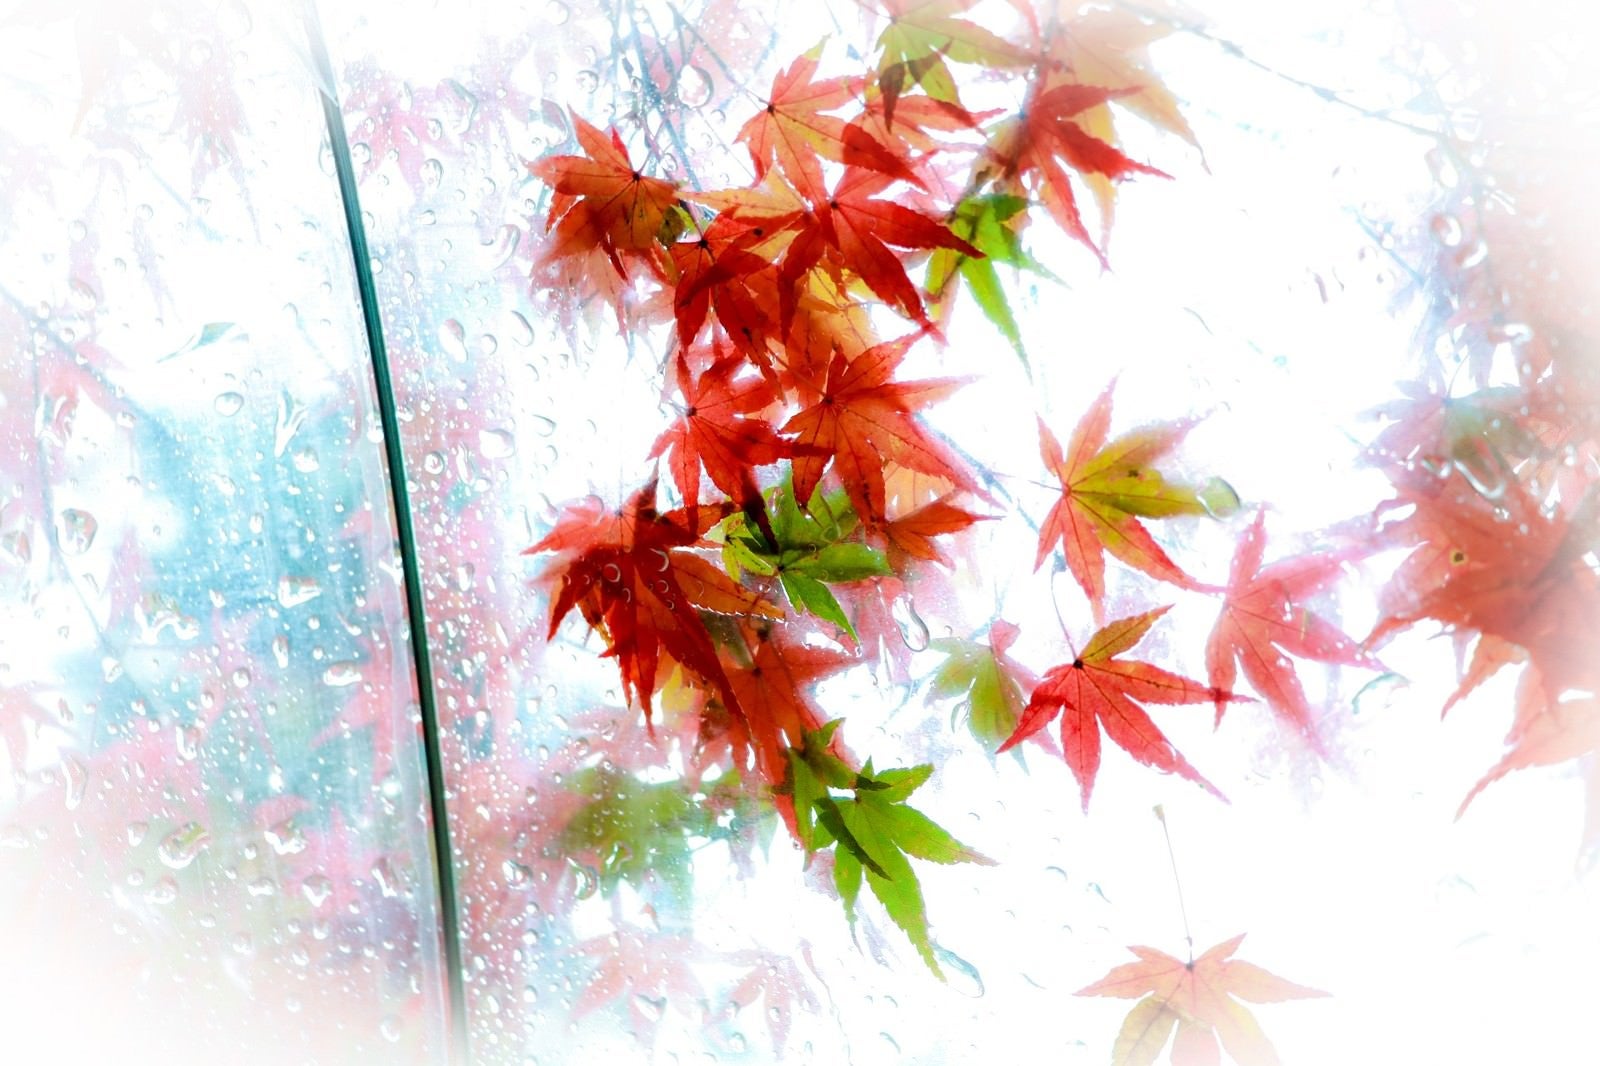 「ビニール傘越しのもみじの葉」の写真